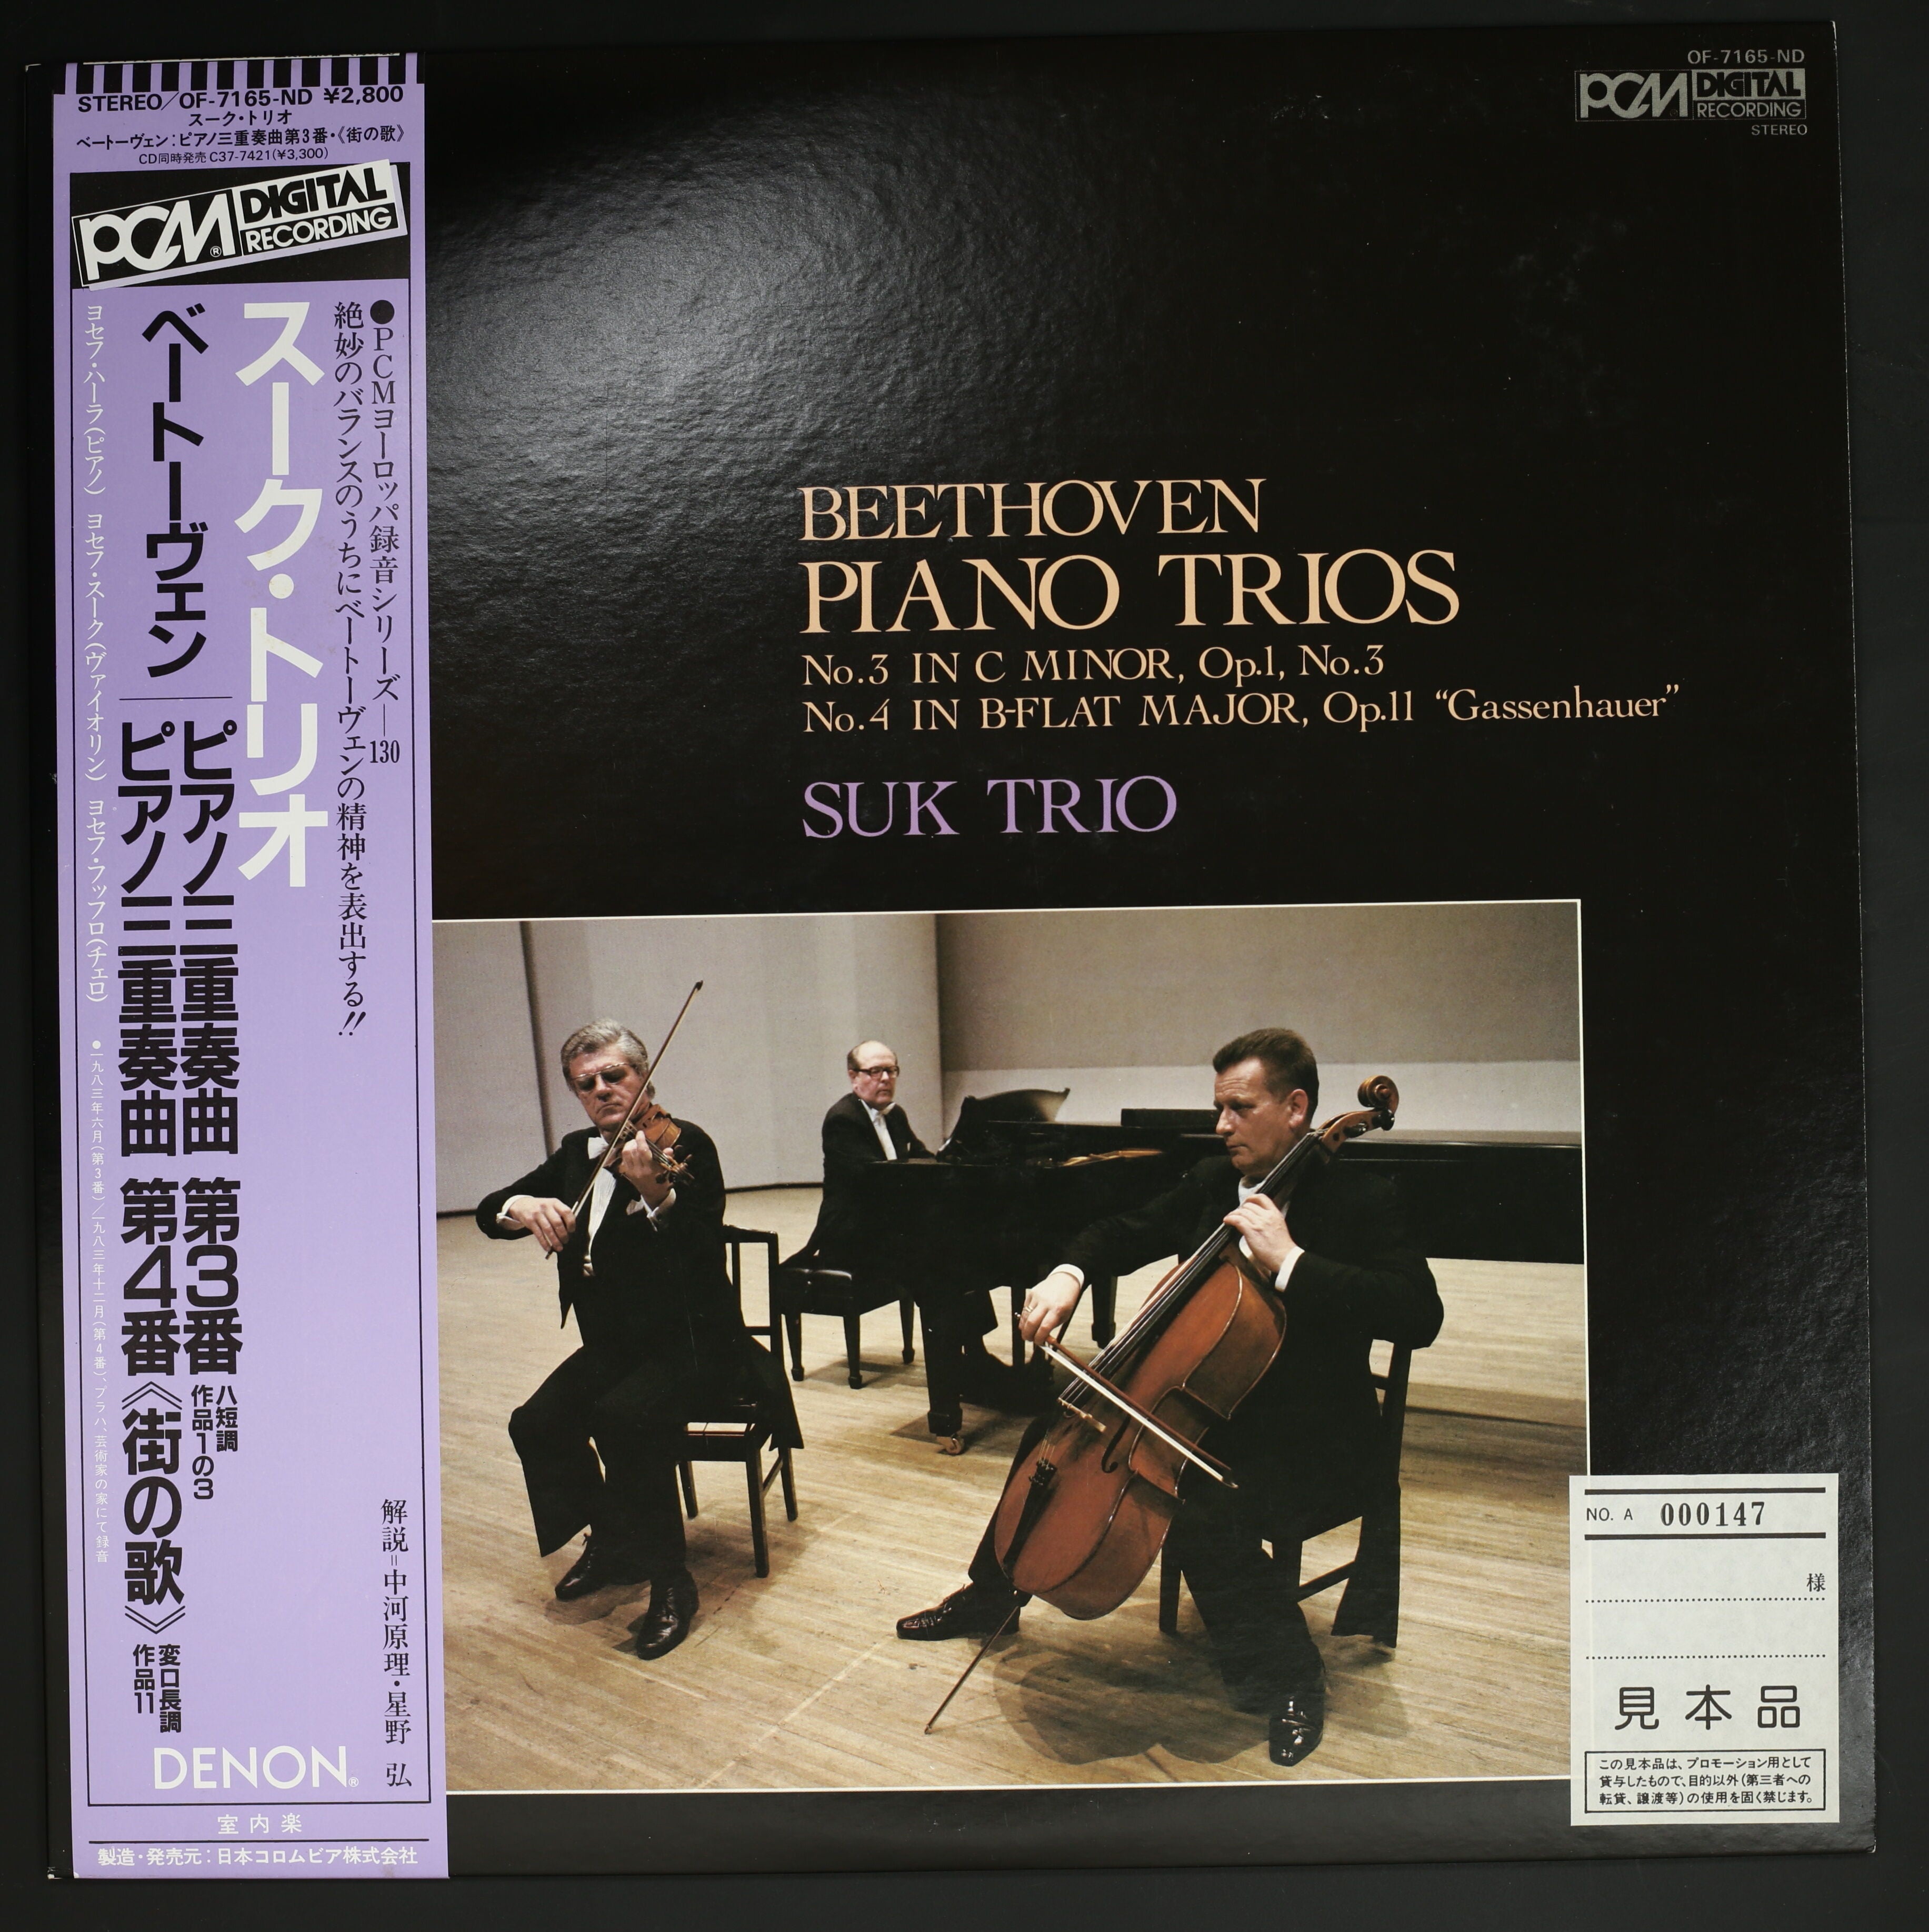 ベートーヴェン:ピアノ三重奏曲第7番「大公」 スーク・トリオ - クラシック